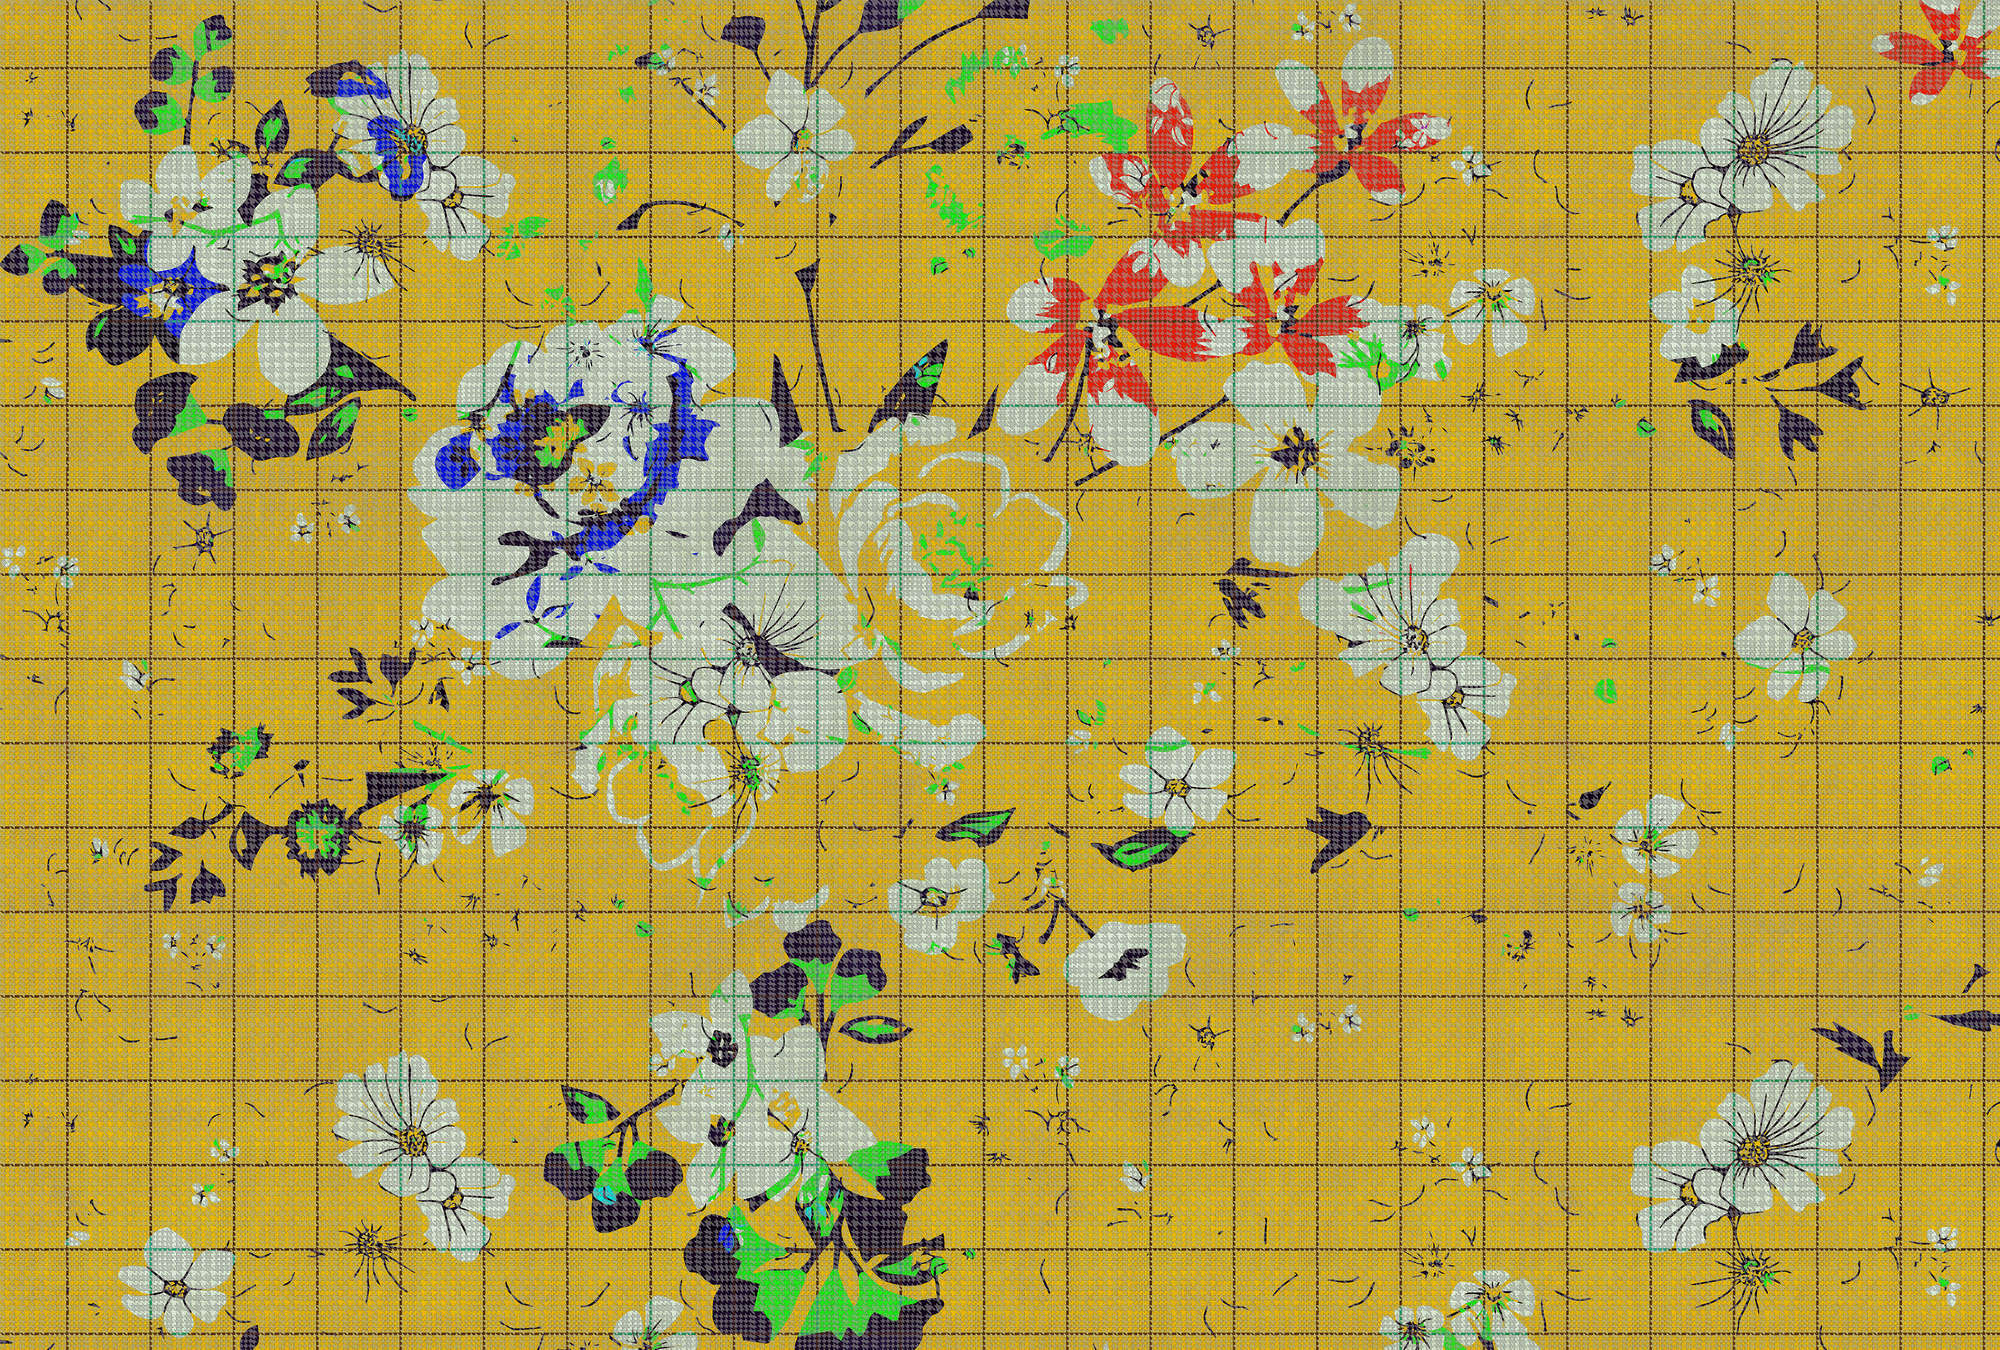             Fiore a quadri 1 - Fotomurali a mosaico di fiori colorati giallo con aspetto a scacchiera - Blu, Giallo | Pile liscio premium
        